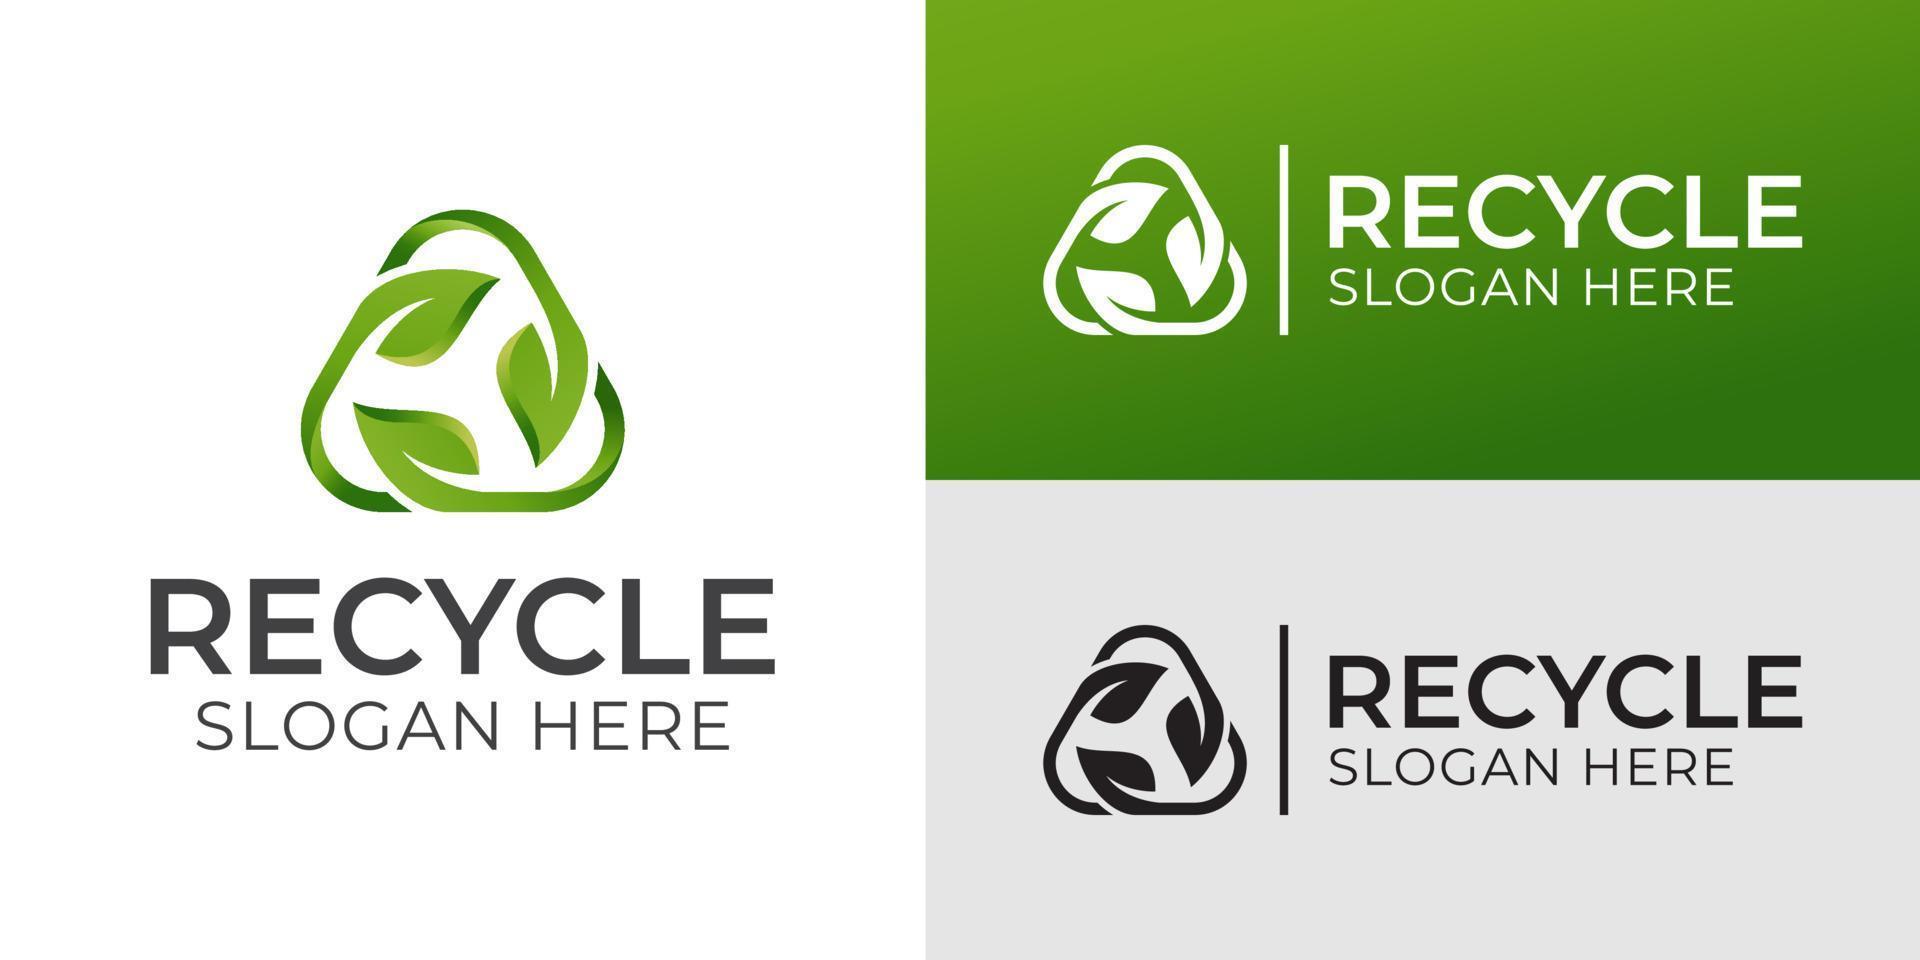 driehoek recyclen met groen blad, recycling ecologie logo of pictogramontwerp vector